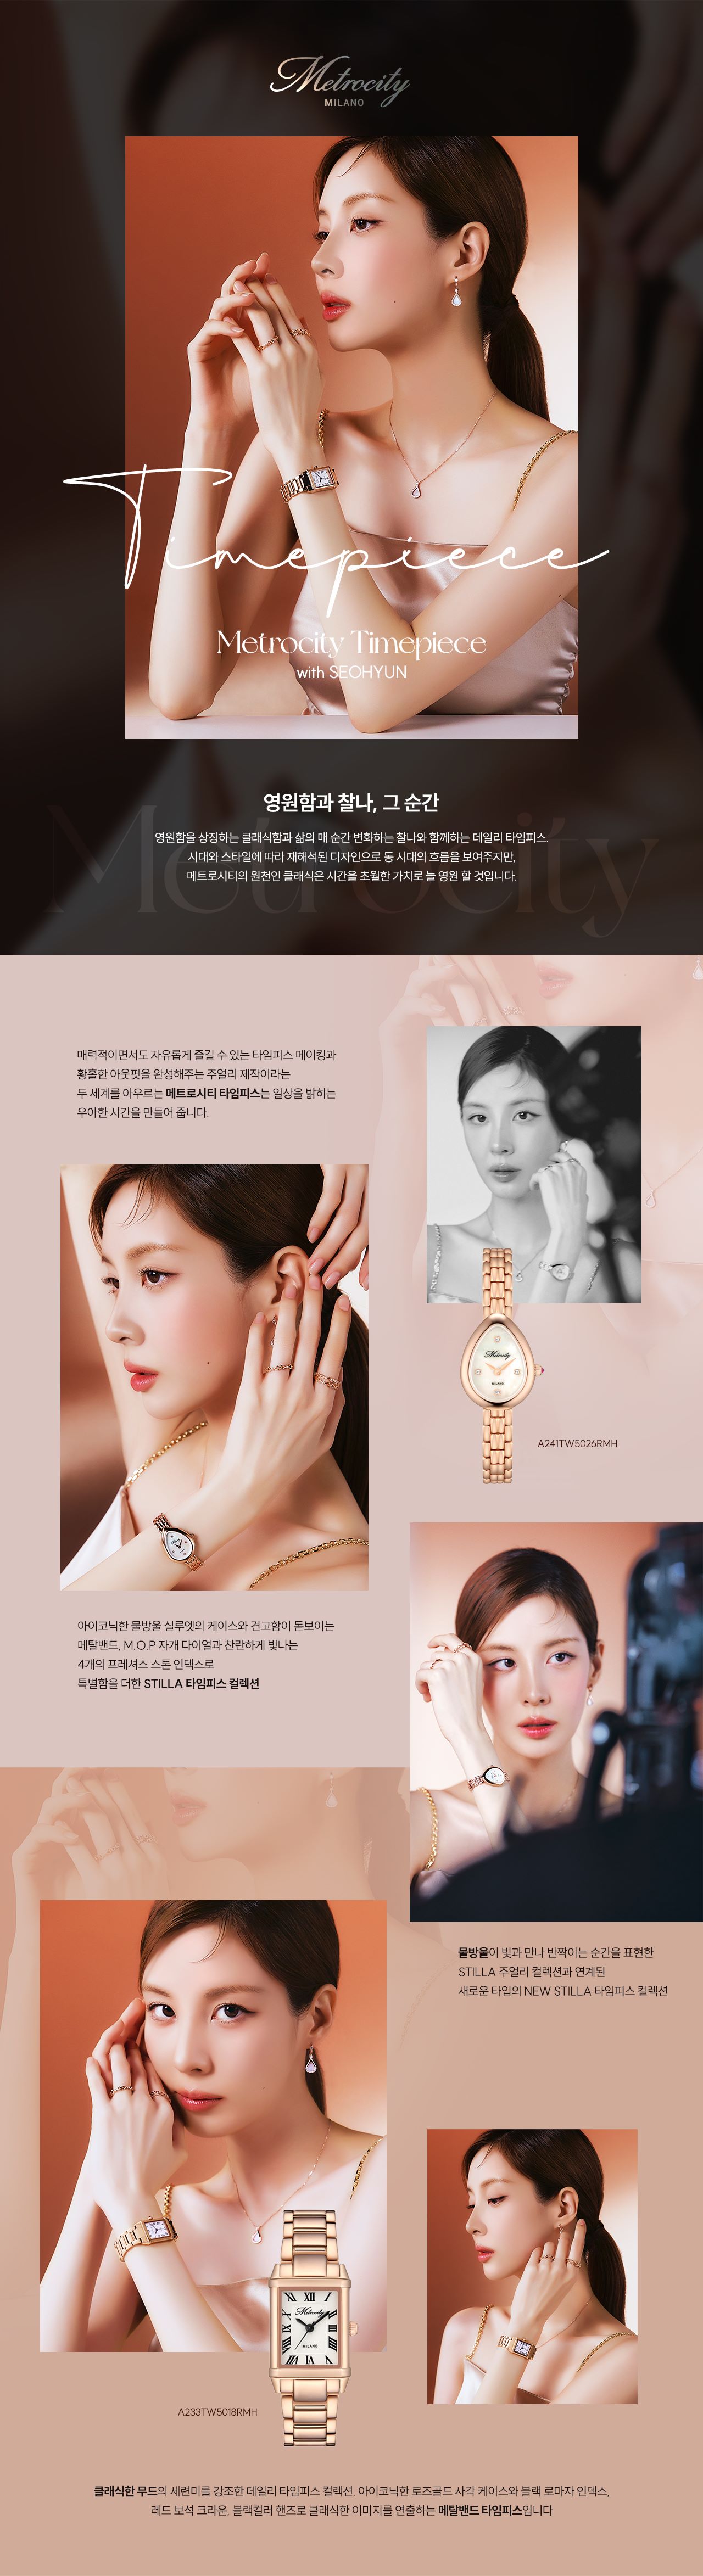 [메트로시티 주얼리] NEW 타임피스 컬렉션 Luxury Watch Collection